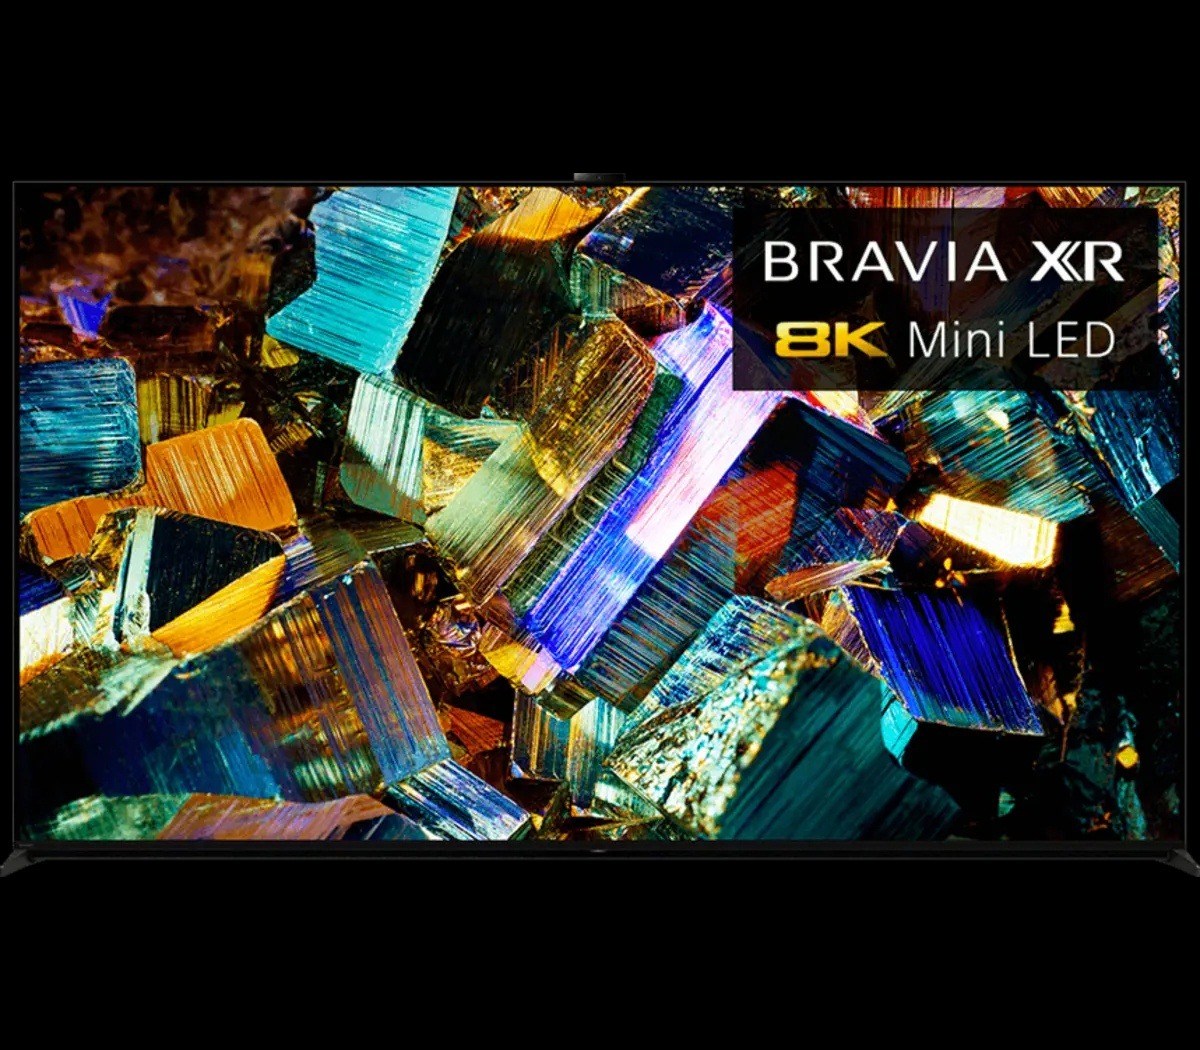 Sony 8K Mini LED 85" TV Bravia XR Z9K Smart HDR Television